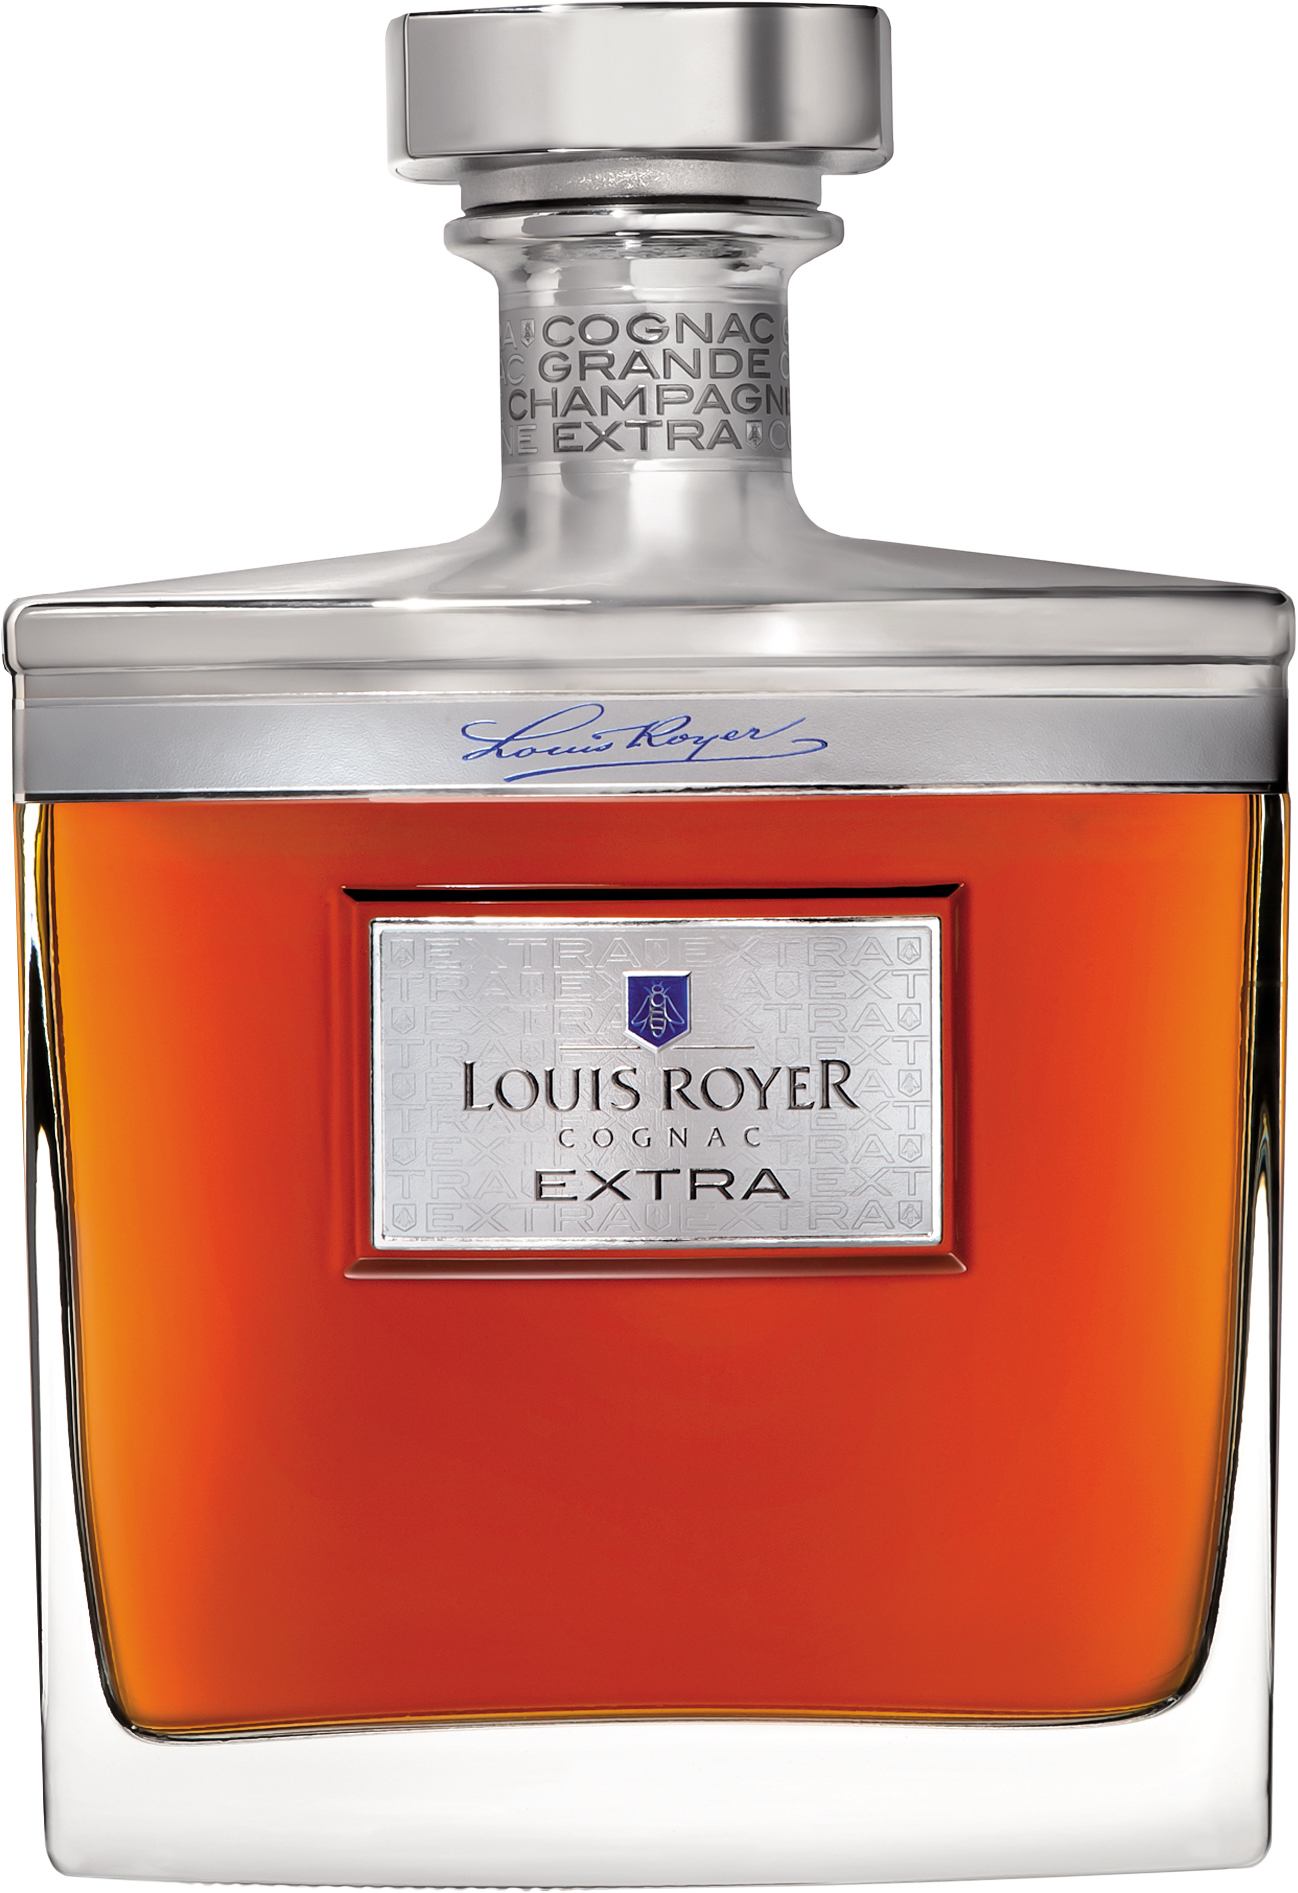 XO, cognac Luxe, made in France, Jarnac